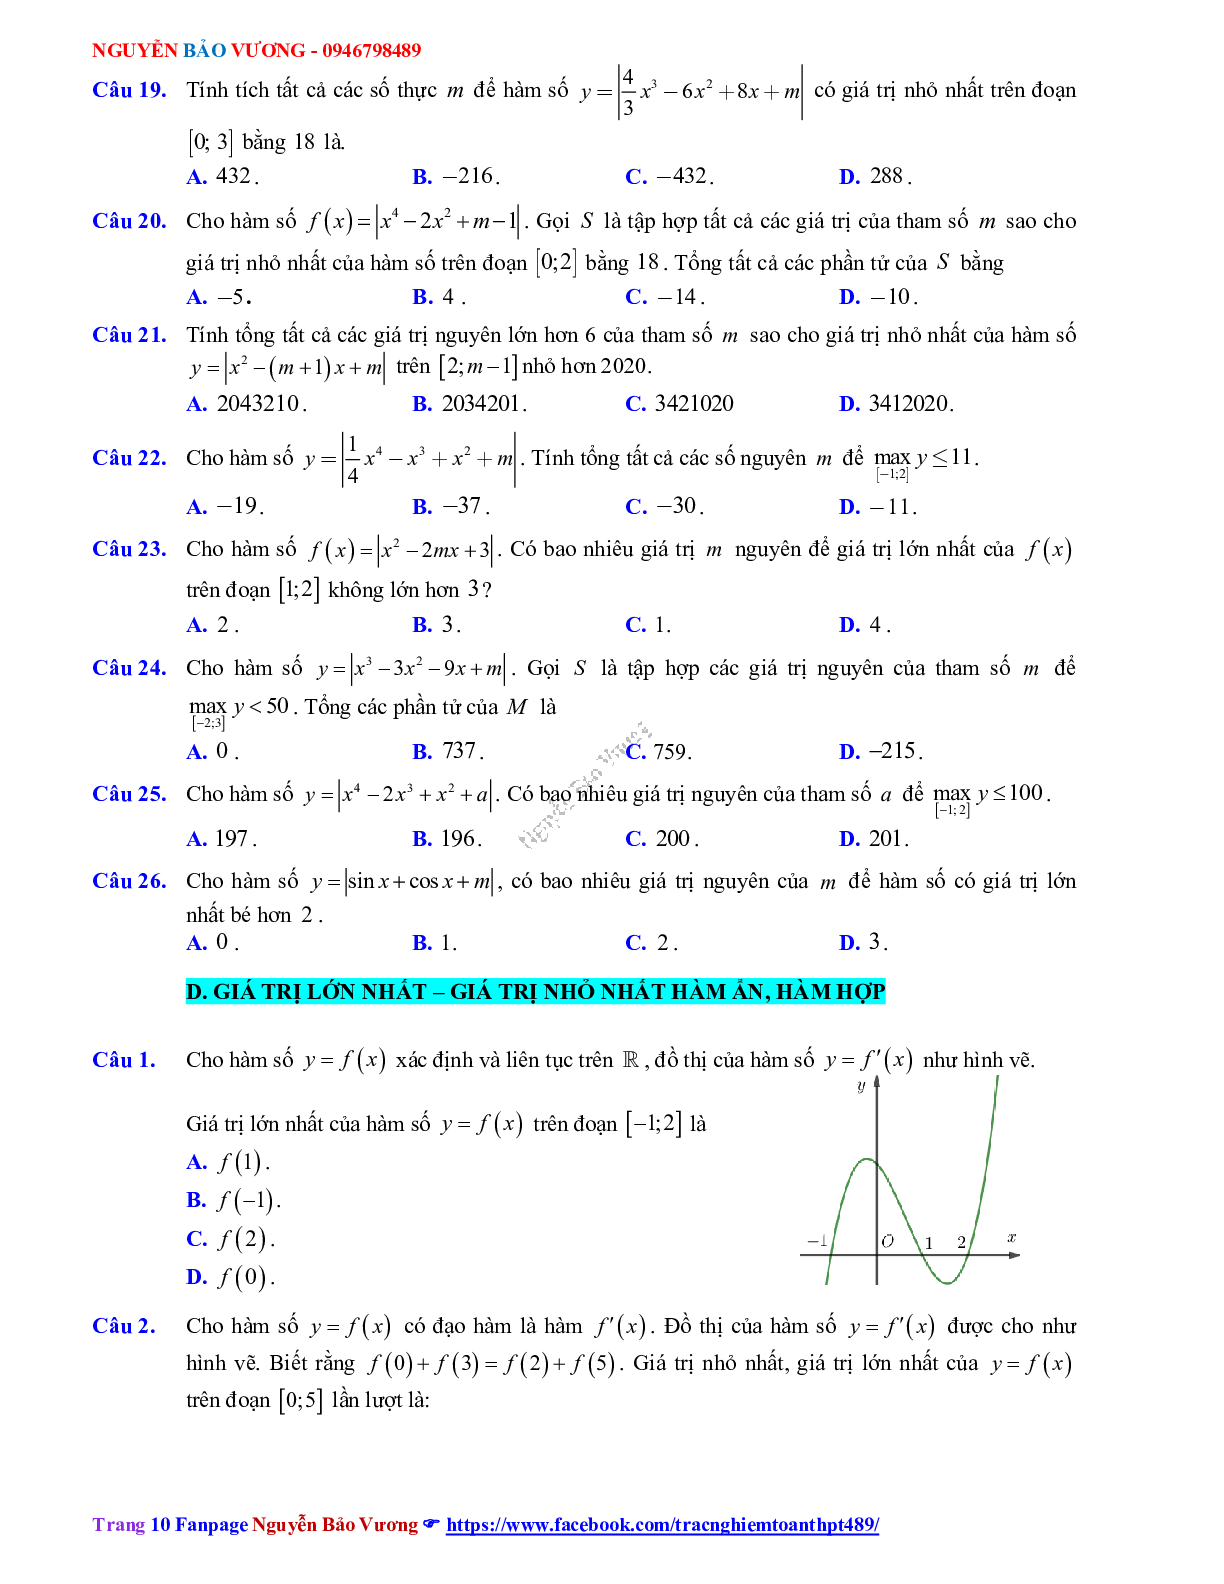 Phương pháp giải về Giá trị lớn nhất, giá trị nhỏ nhất của hàm số 2023 (lý thuyết và bài tập) (trang 10)